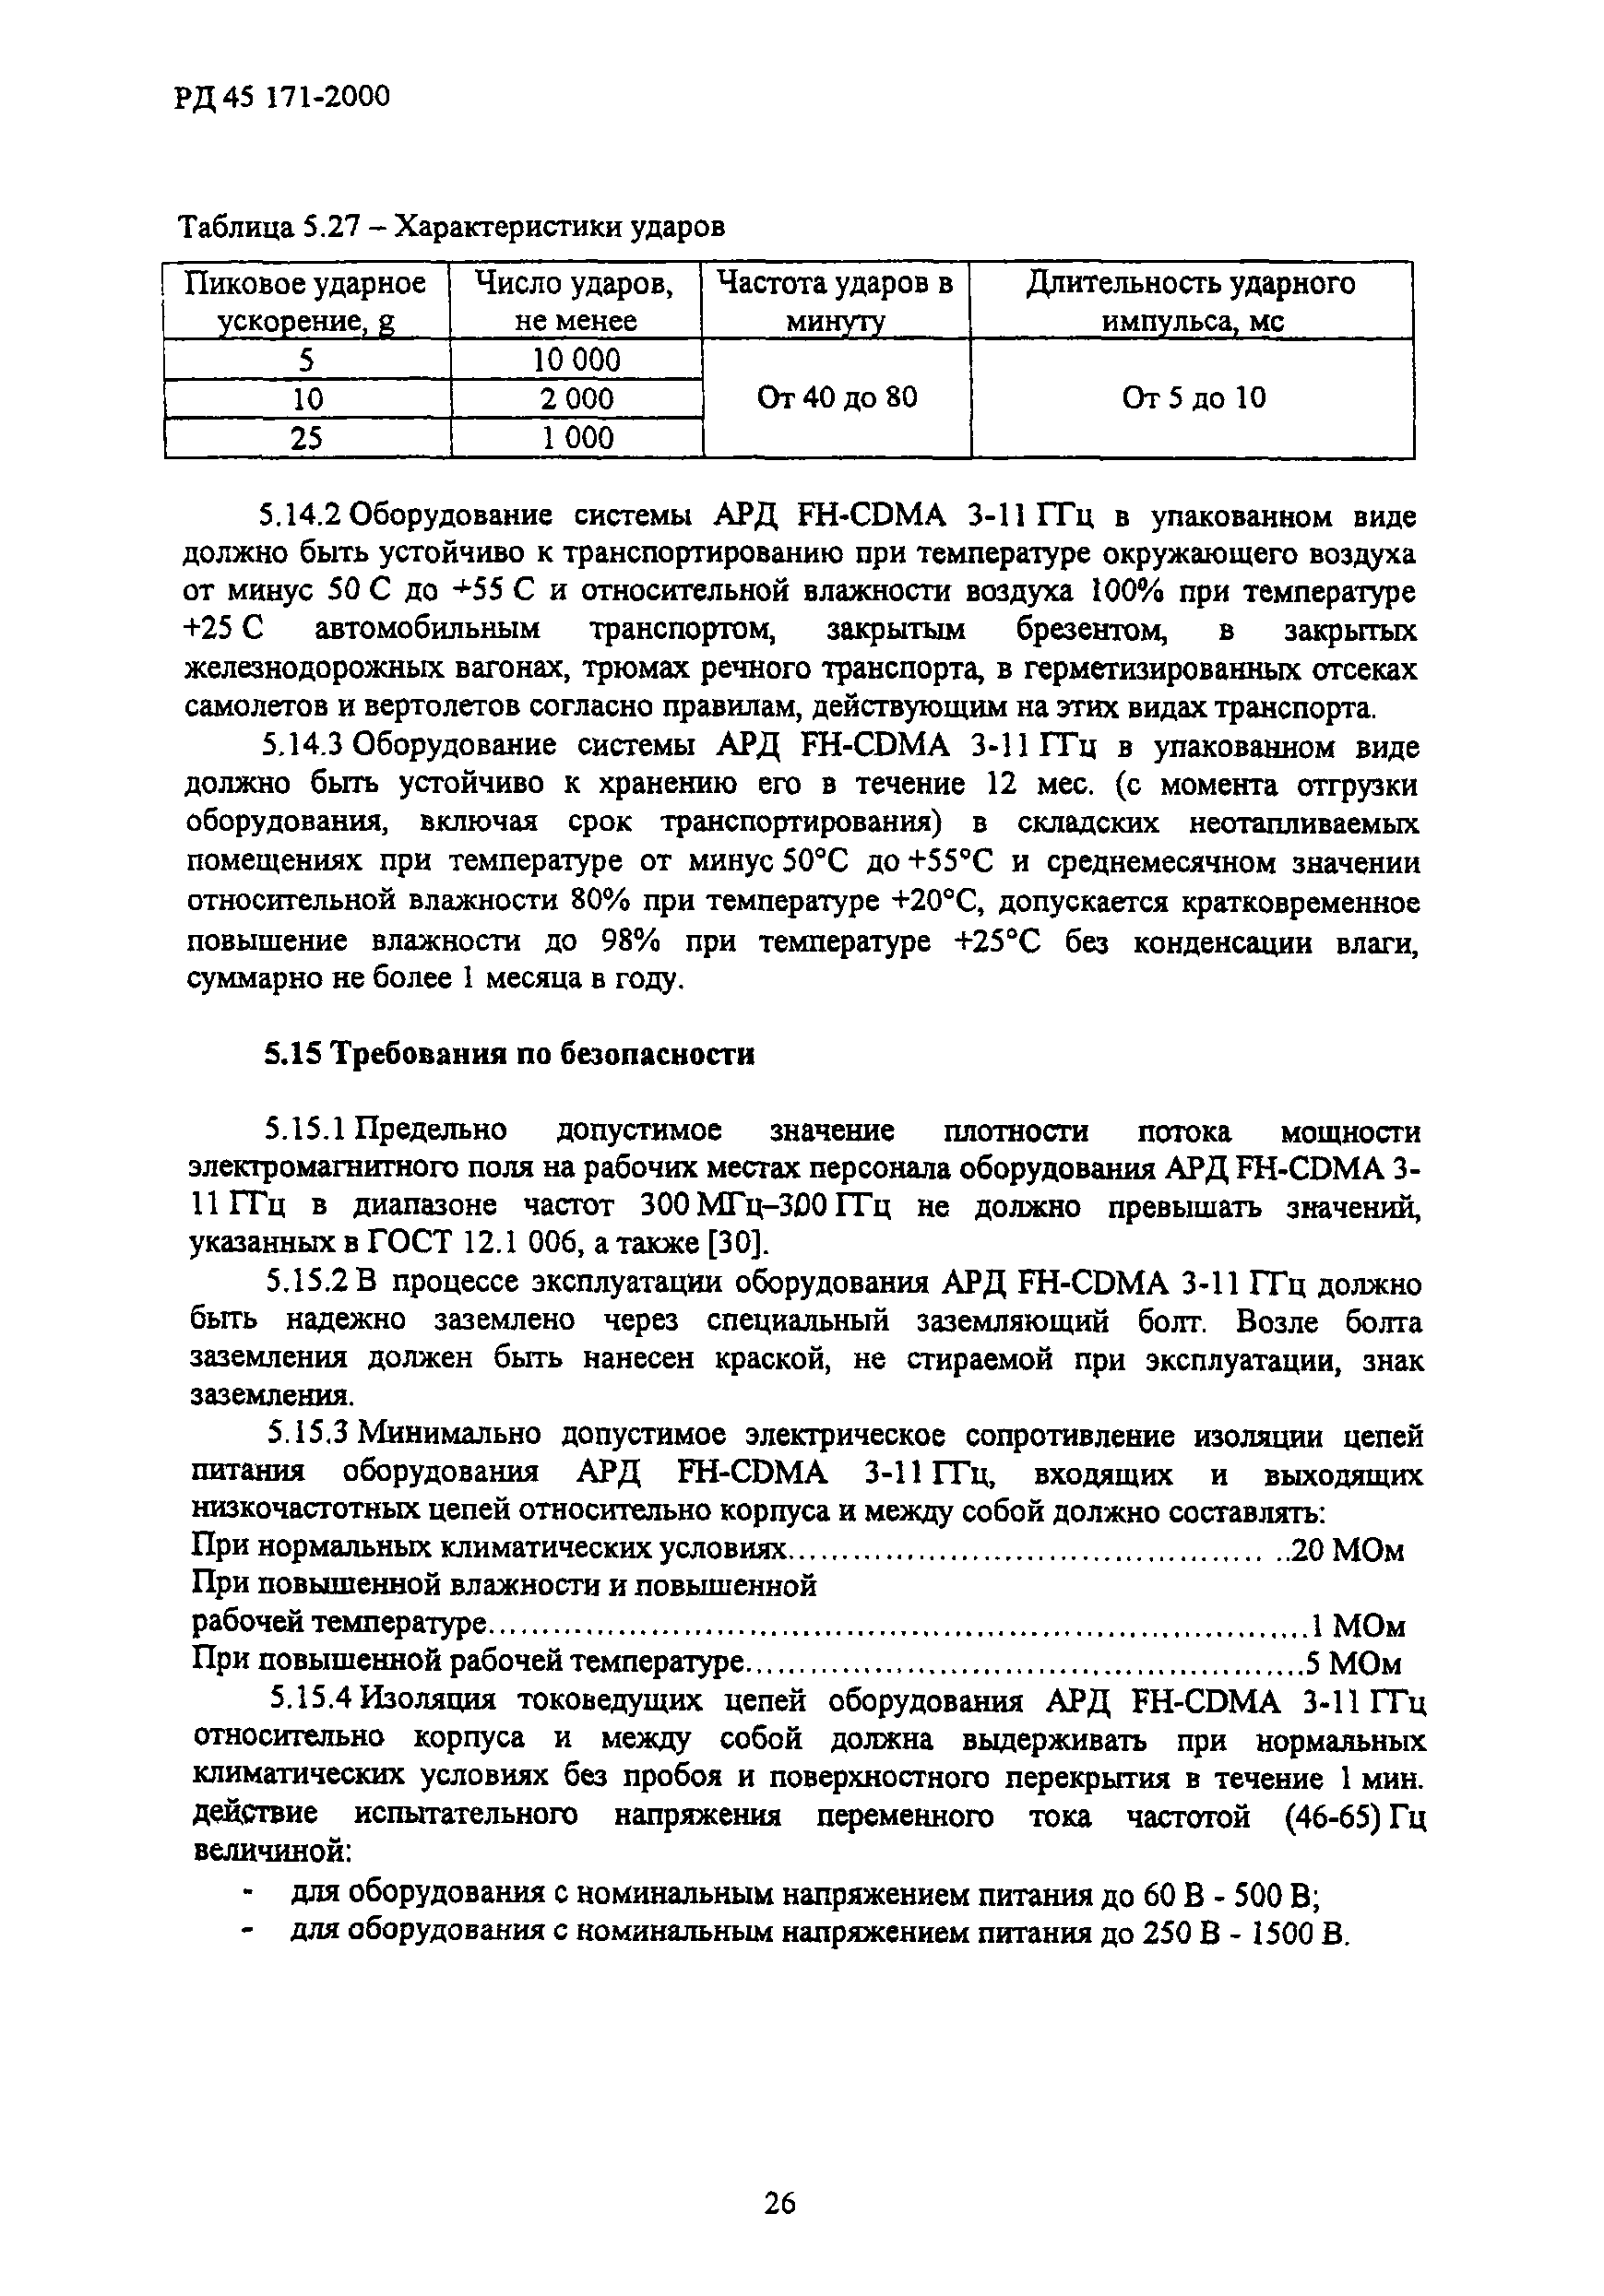 РД 45.171-2000